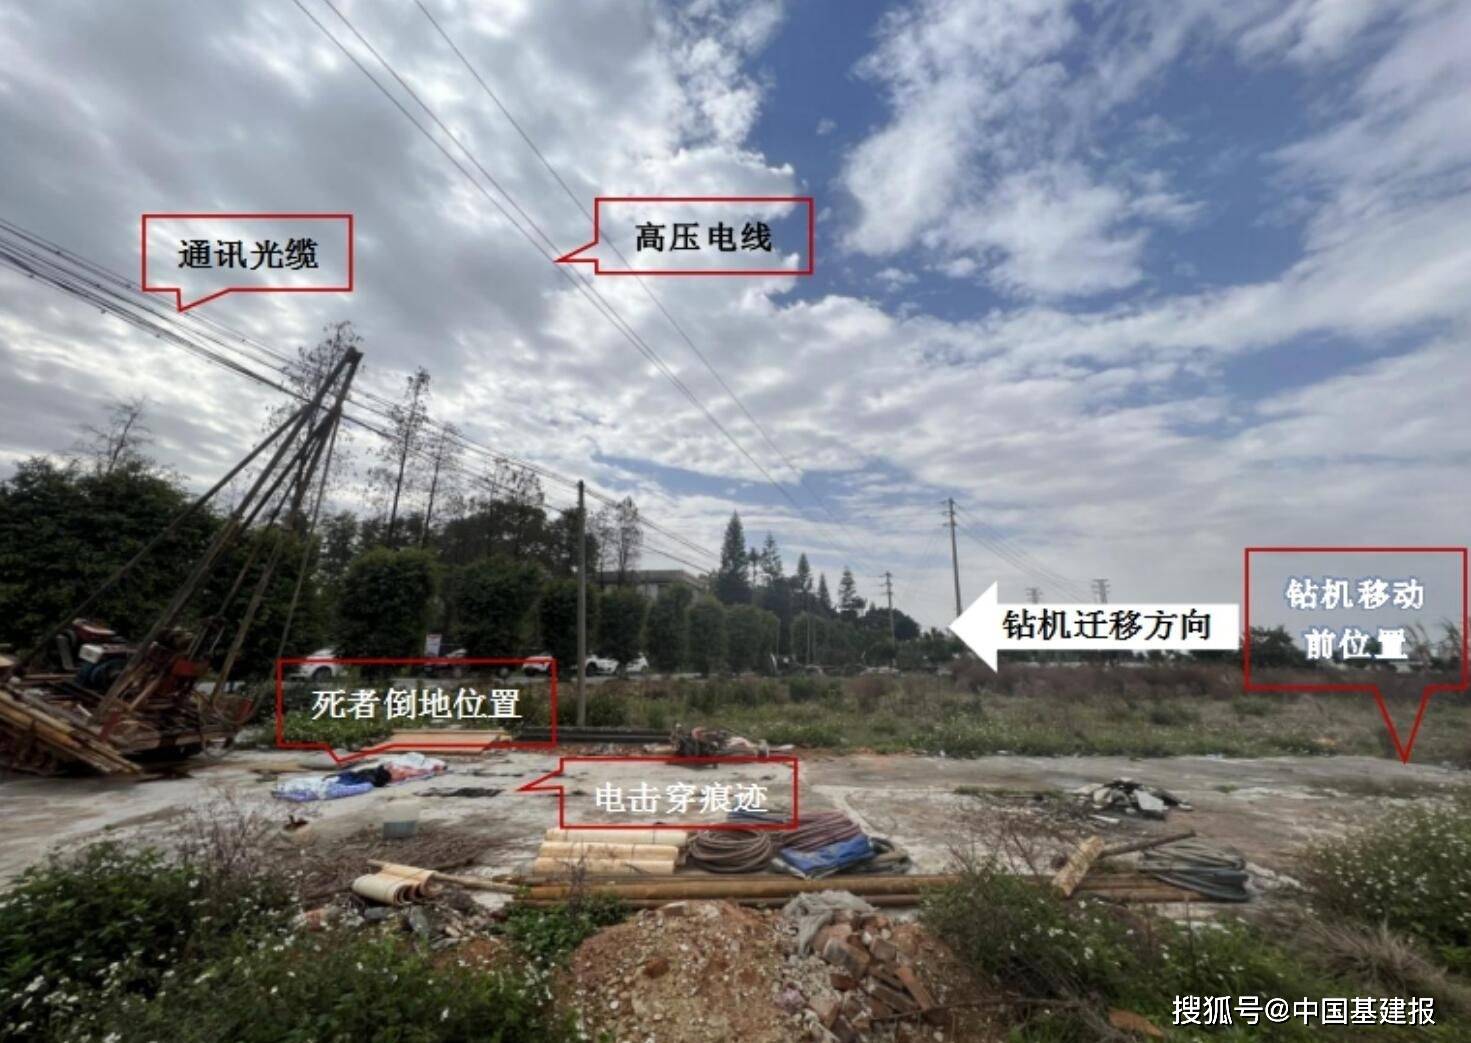 广东核勘院某土储项目机械伤害事故查明 致一名钻机机长身亡 广州 中核 魏绍某